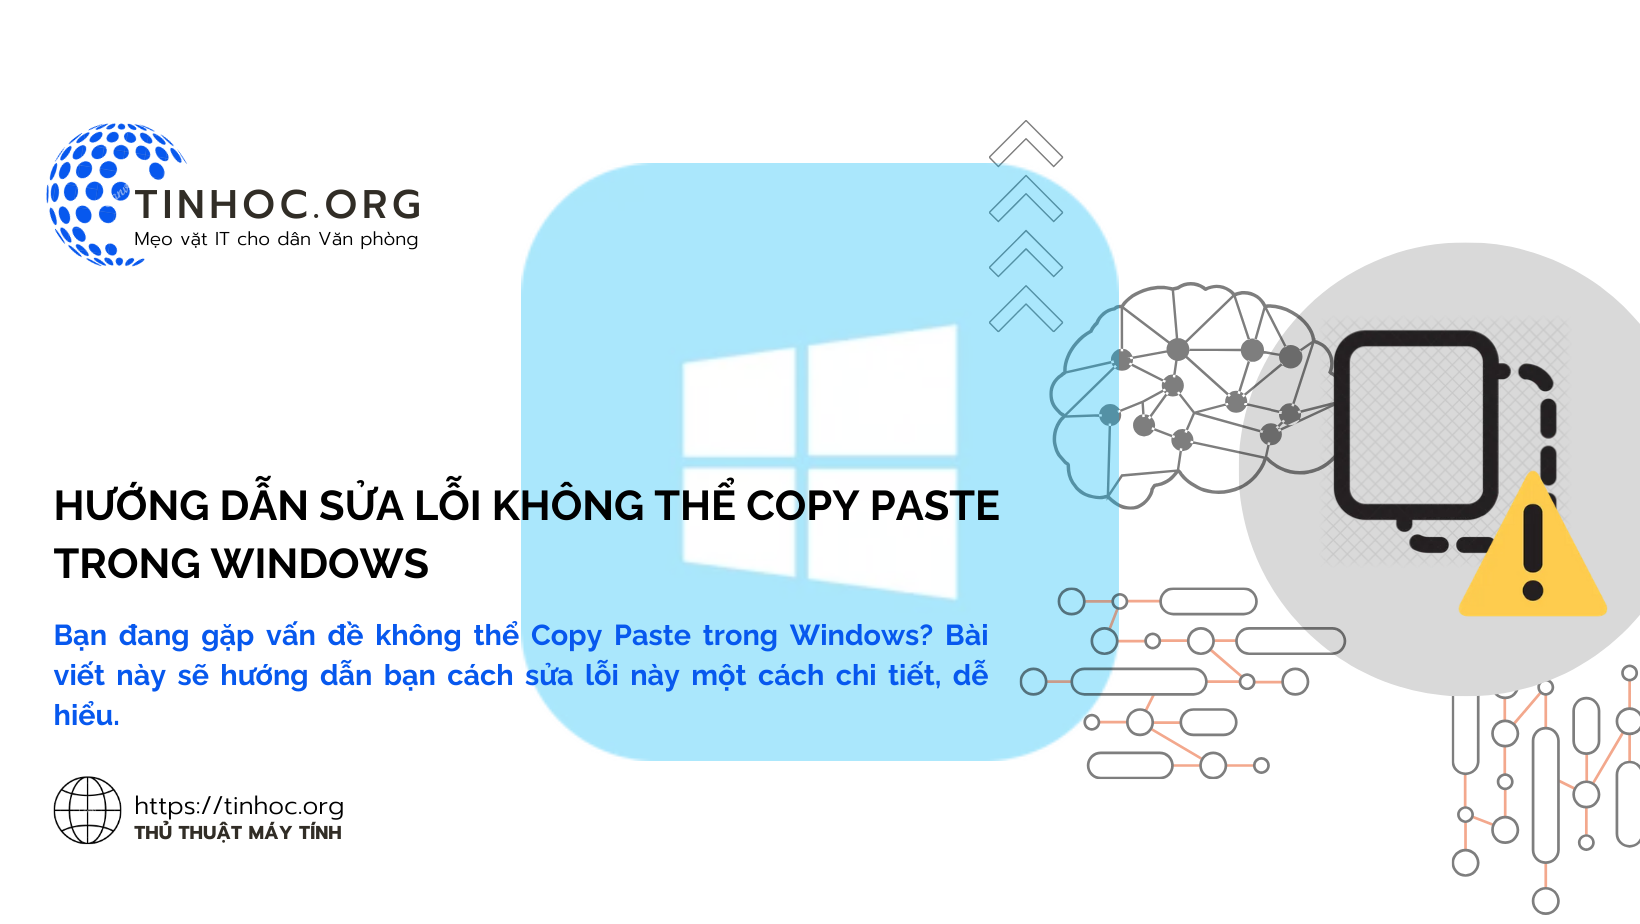 Bạn đang gặp vấn đề không thể Copy Paste trong Windows? Bài viết này sẽ hướng dẫn bạn cách sửa lỗi này một cách chi tiết, dễ hiểu.